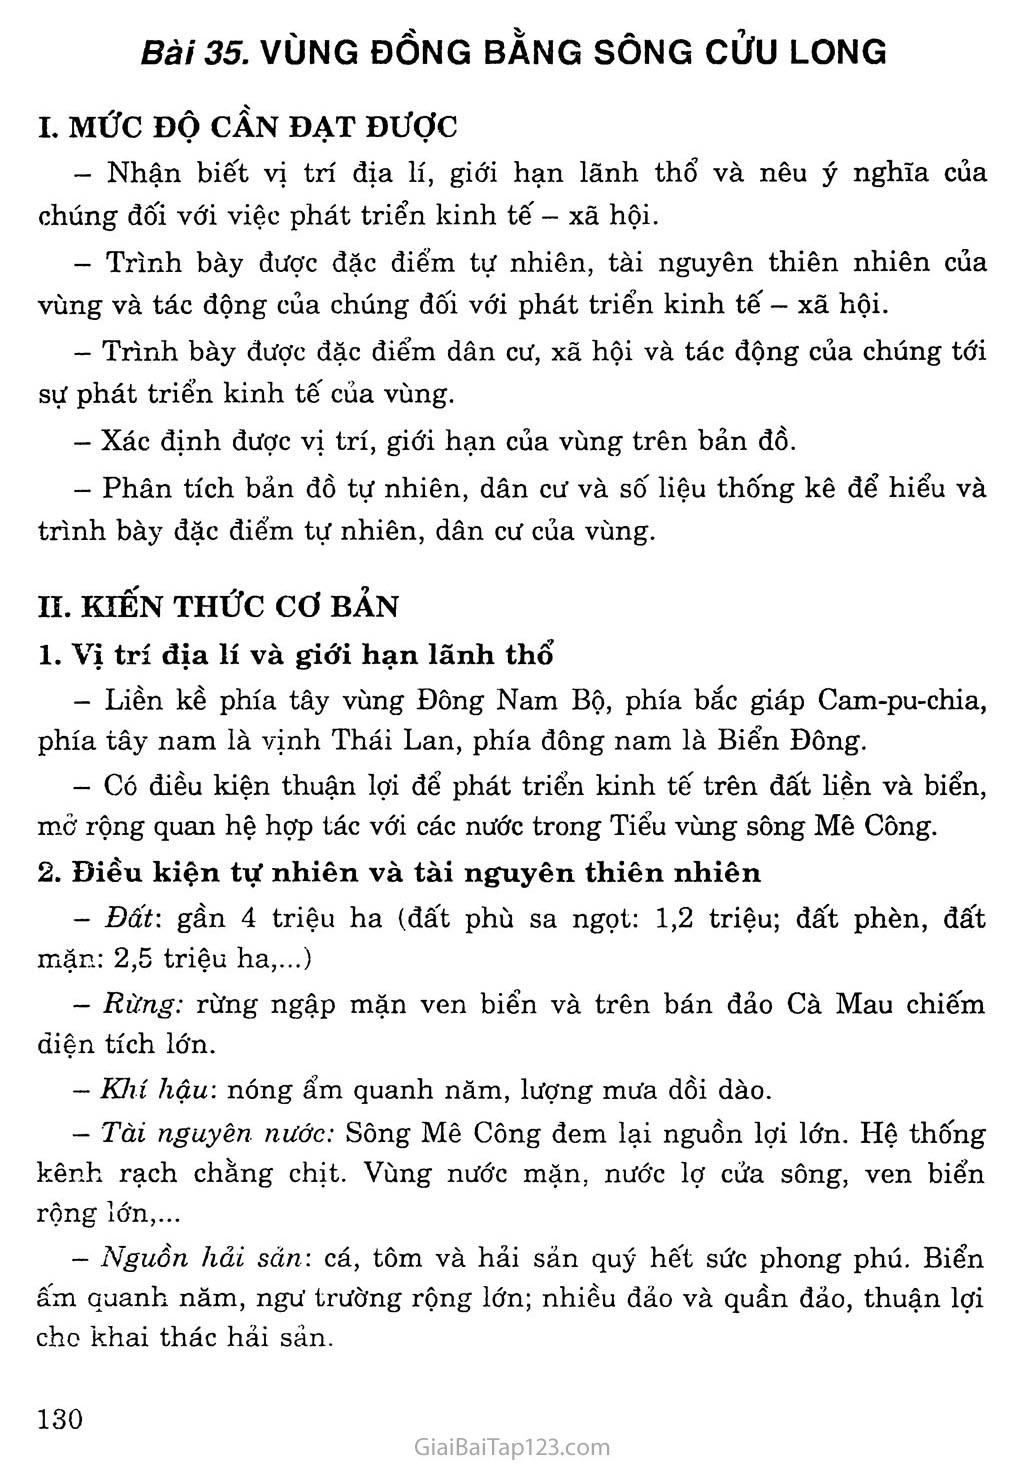 Bài 35: Vùng Đồng bằng sông Cửu Long trang 1